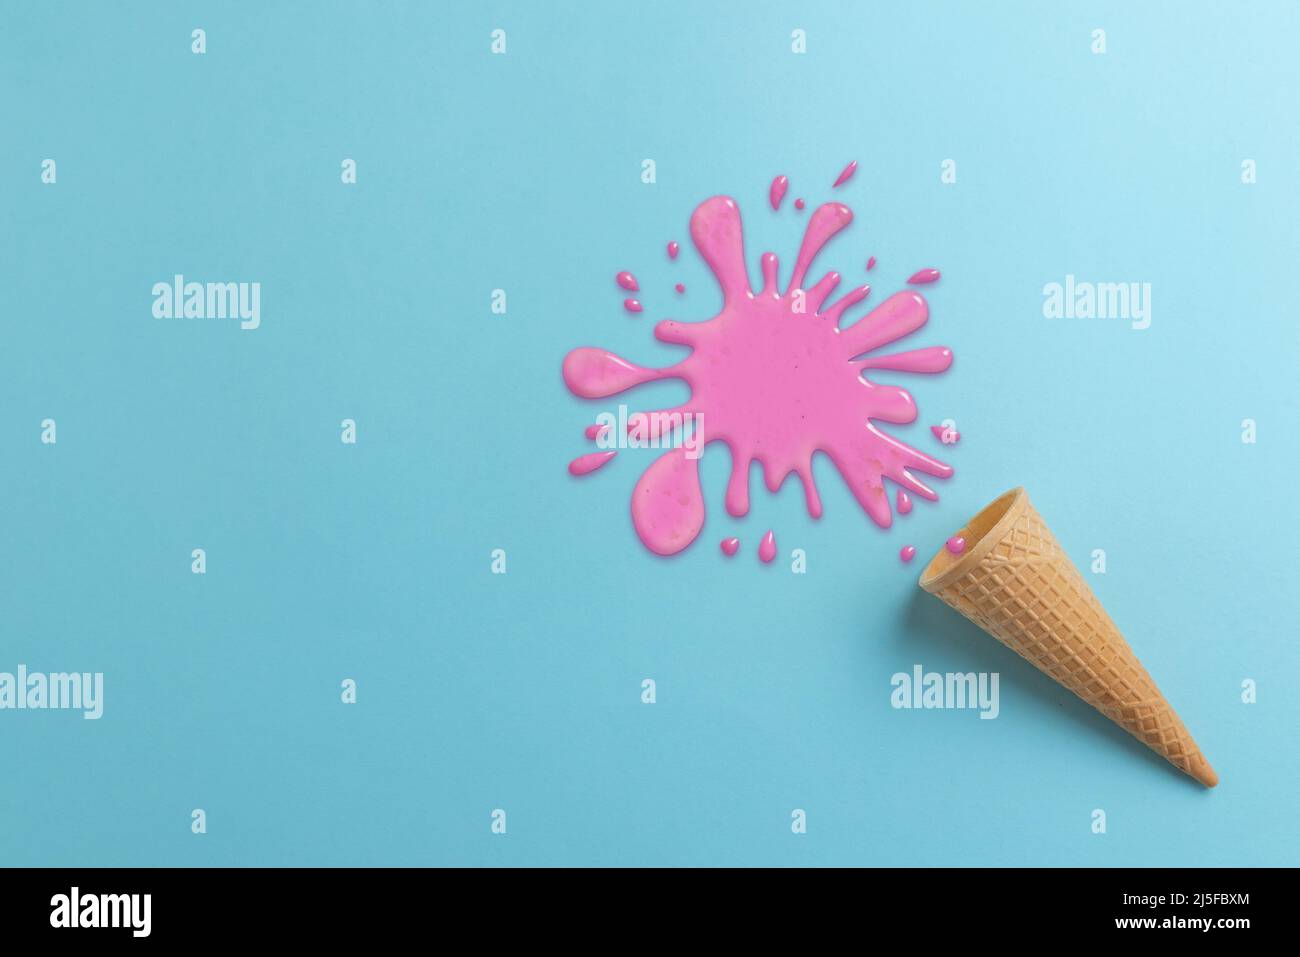 Fallengelassene Eiscreme auf Cyan Oberfläche Konzept. Verschüttete rosafarbene Creme. Draufsicht, flache Lay-Komposition Stockfoto